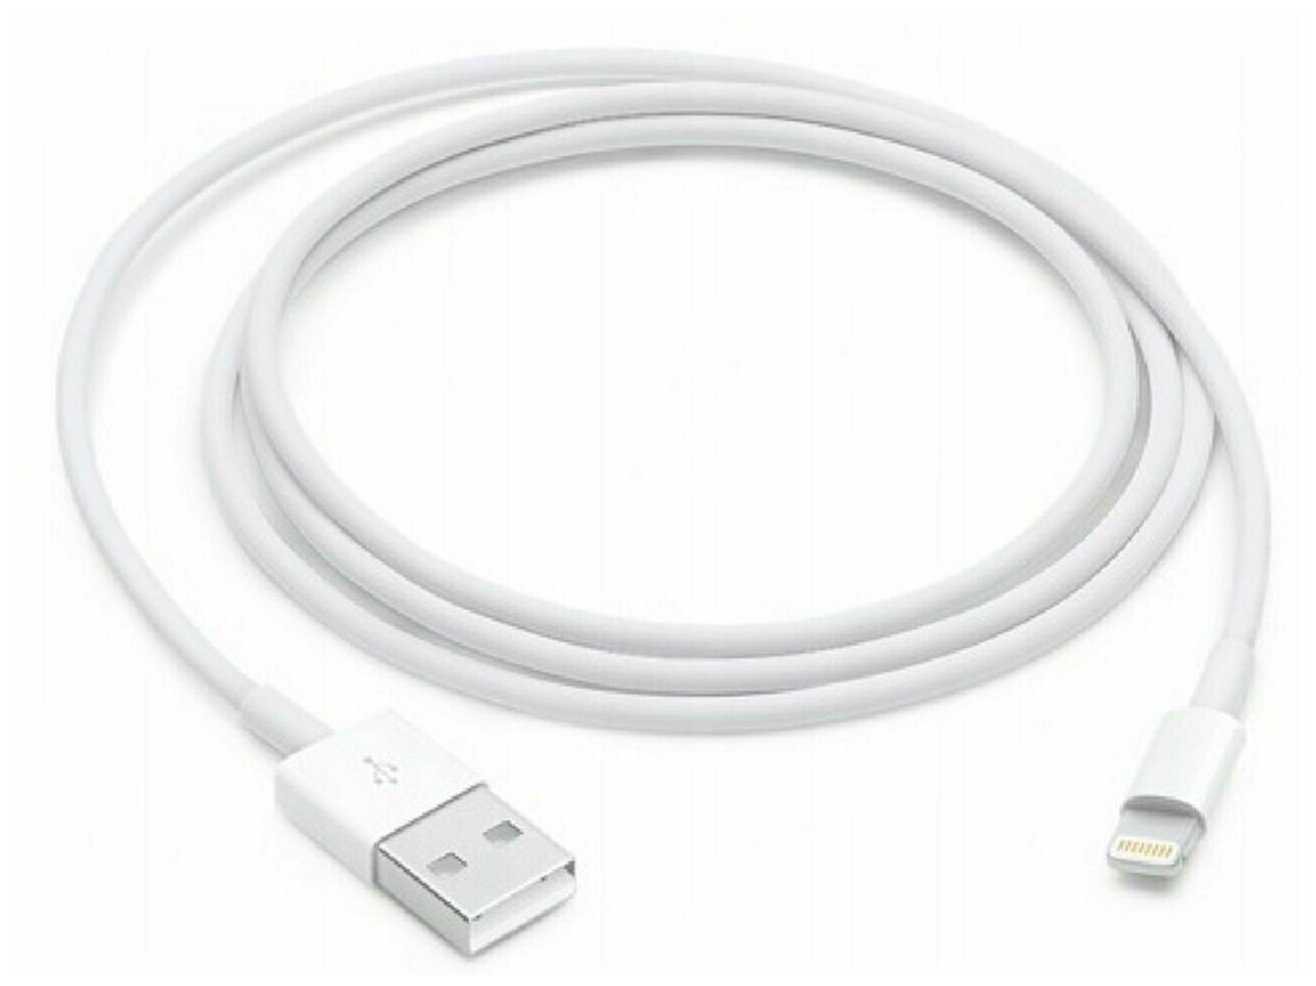 Зарядный кабель для Apple iPhone и AirPods / Lightning - USB 1Ампер/ Для Эпл Айфон и Эирподс Лайтинг / Simple Cable 1 м (Белый)